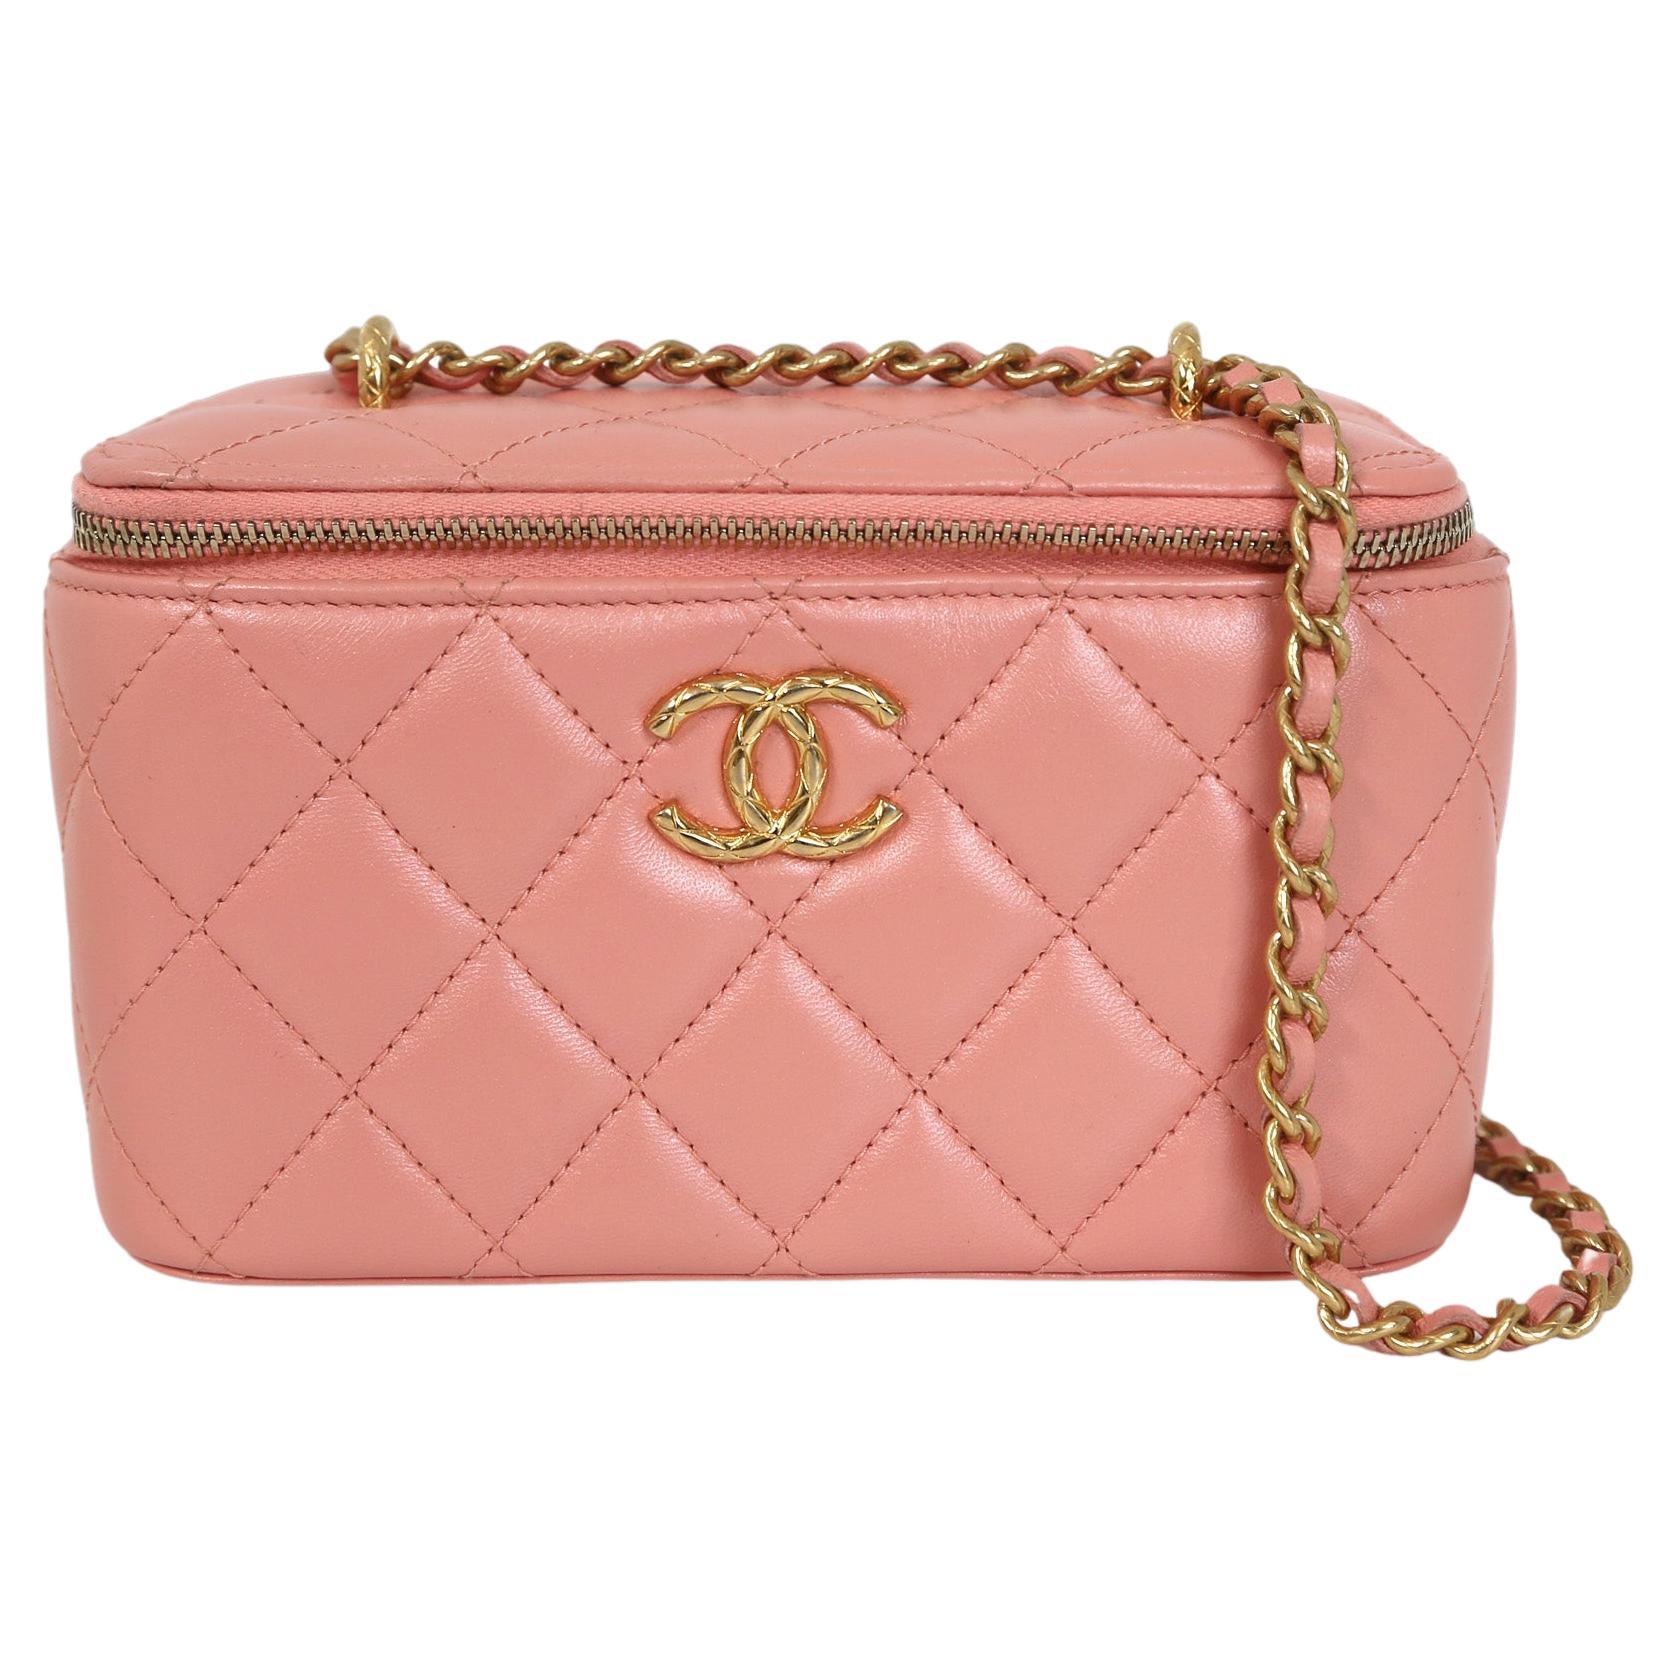 Chanel Vanity Case Pink Leather Handbag For Sale